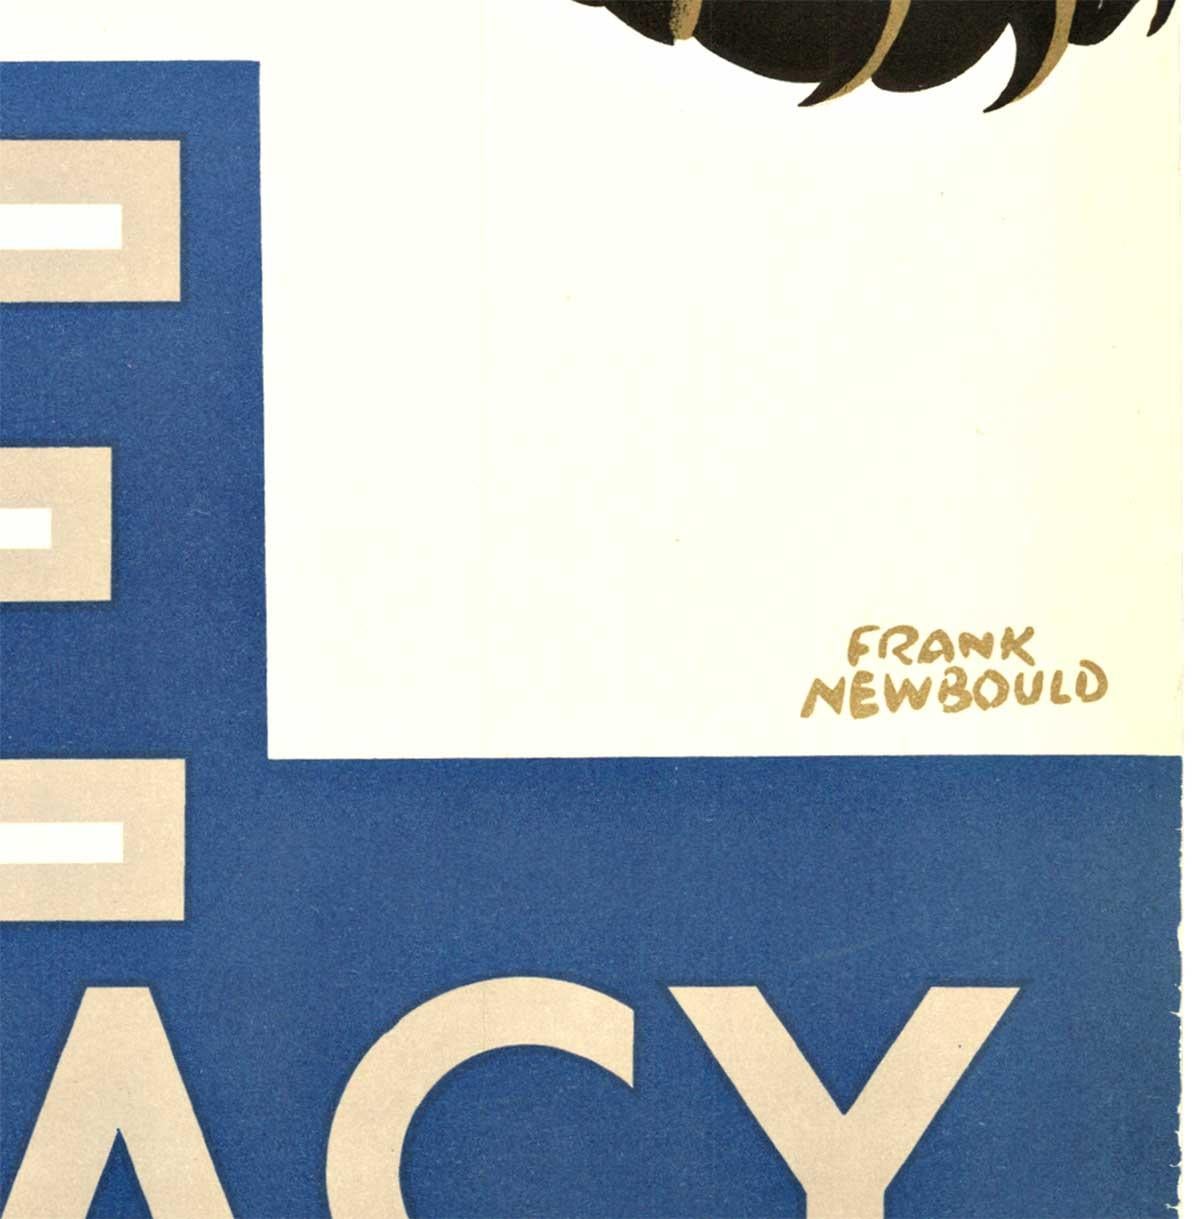 Affiche vintage originale de la Seconde Guerre mondiale britannique :  Sauvegarde de la suprématie
Caisse d'épargne postale
Affiche lithographique originale au dos en lin.
Image : représentation d'un lion ailé bondissant dans les airs, tourné de